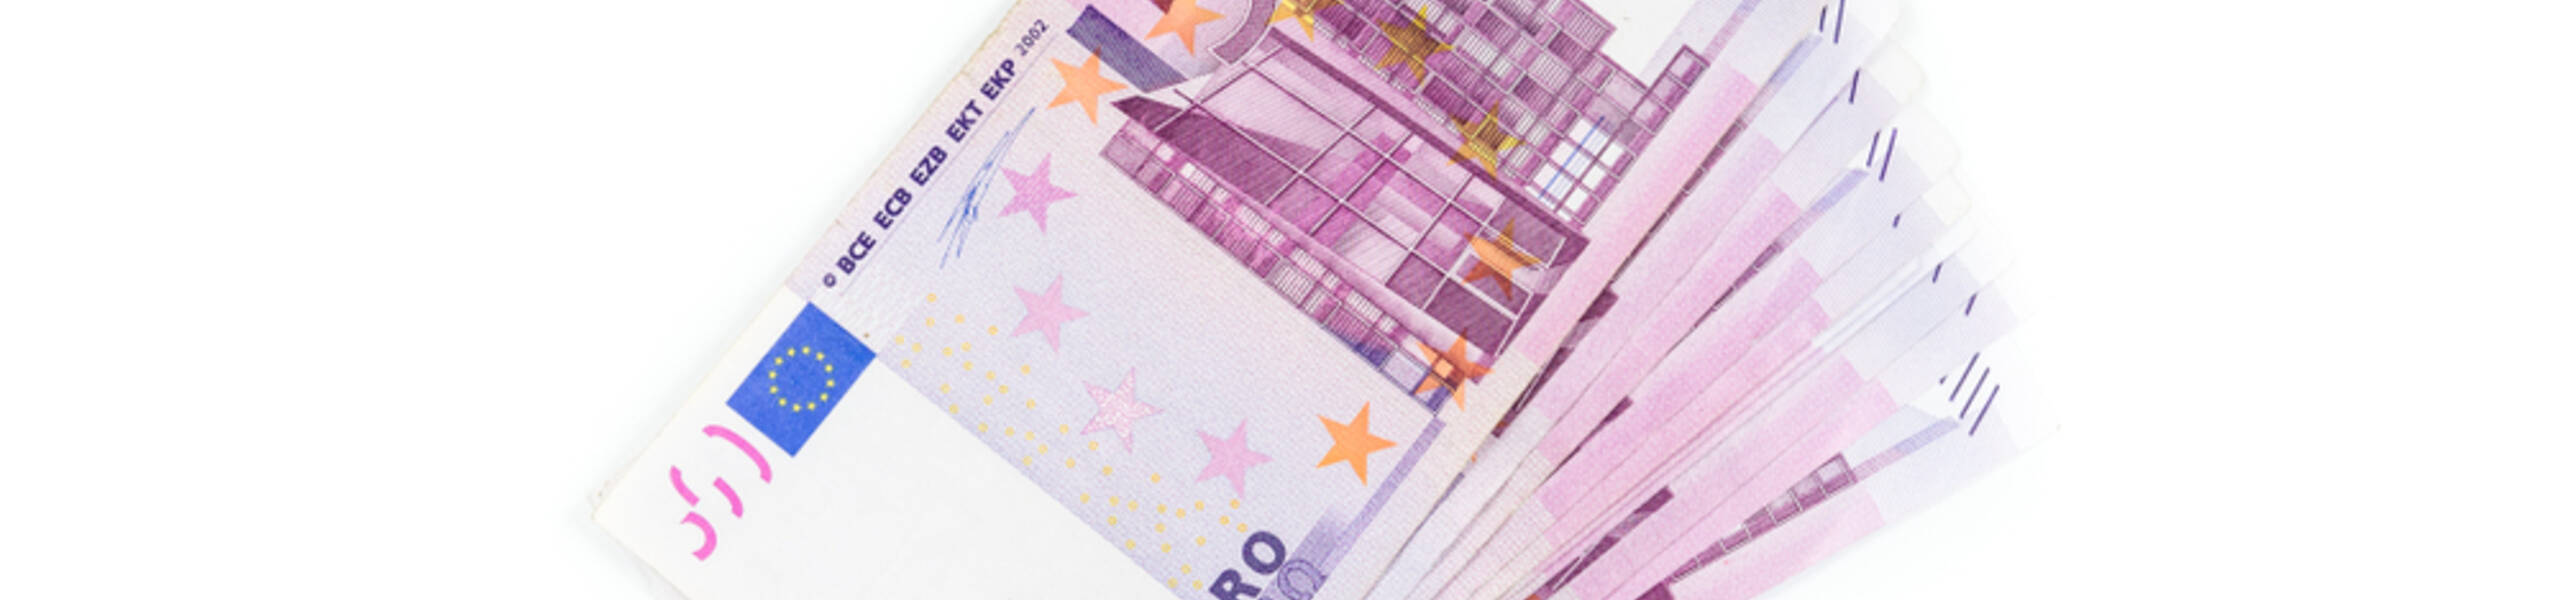 اليورو وأبرز التحديثات ليوم 18-1-2022